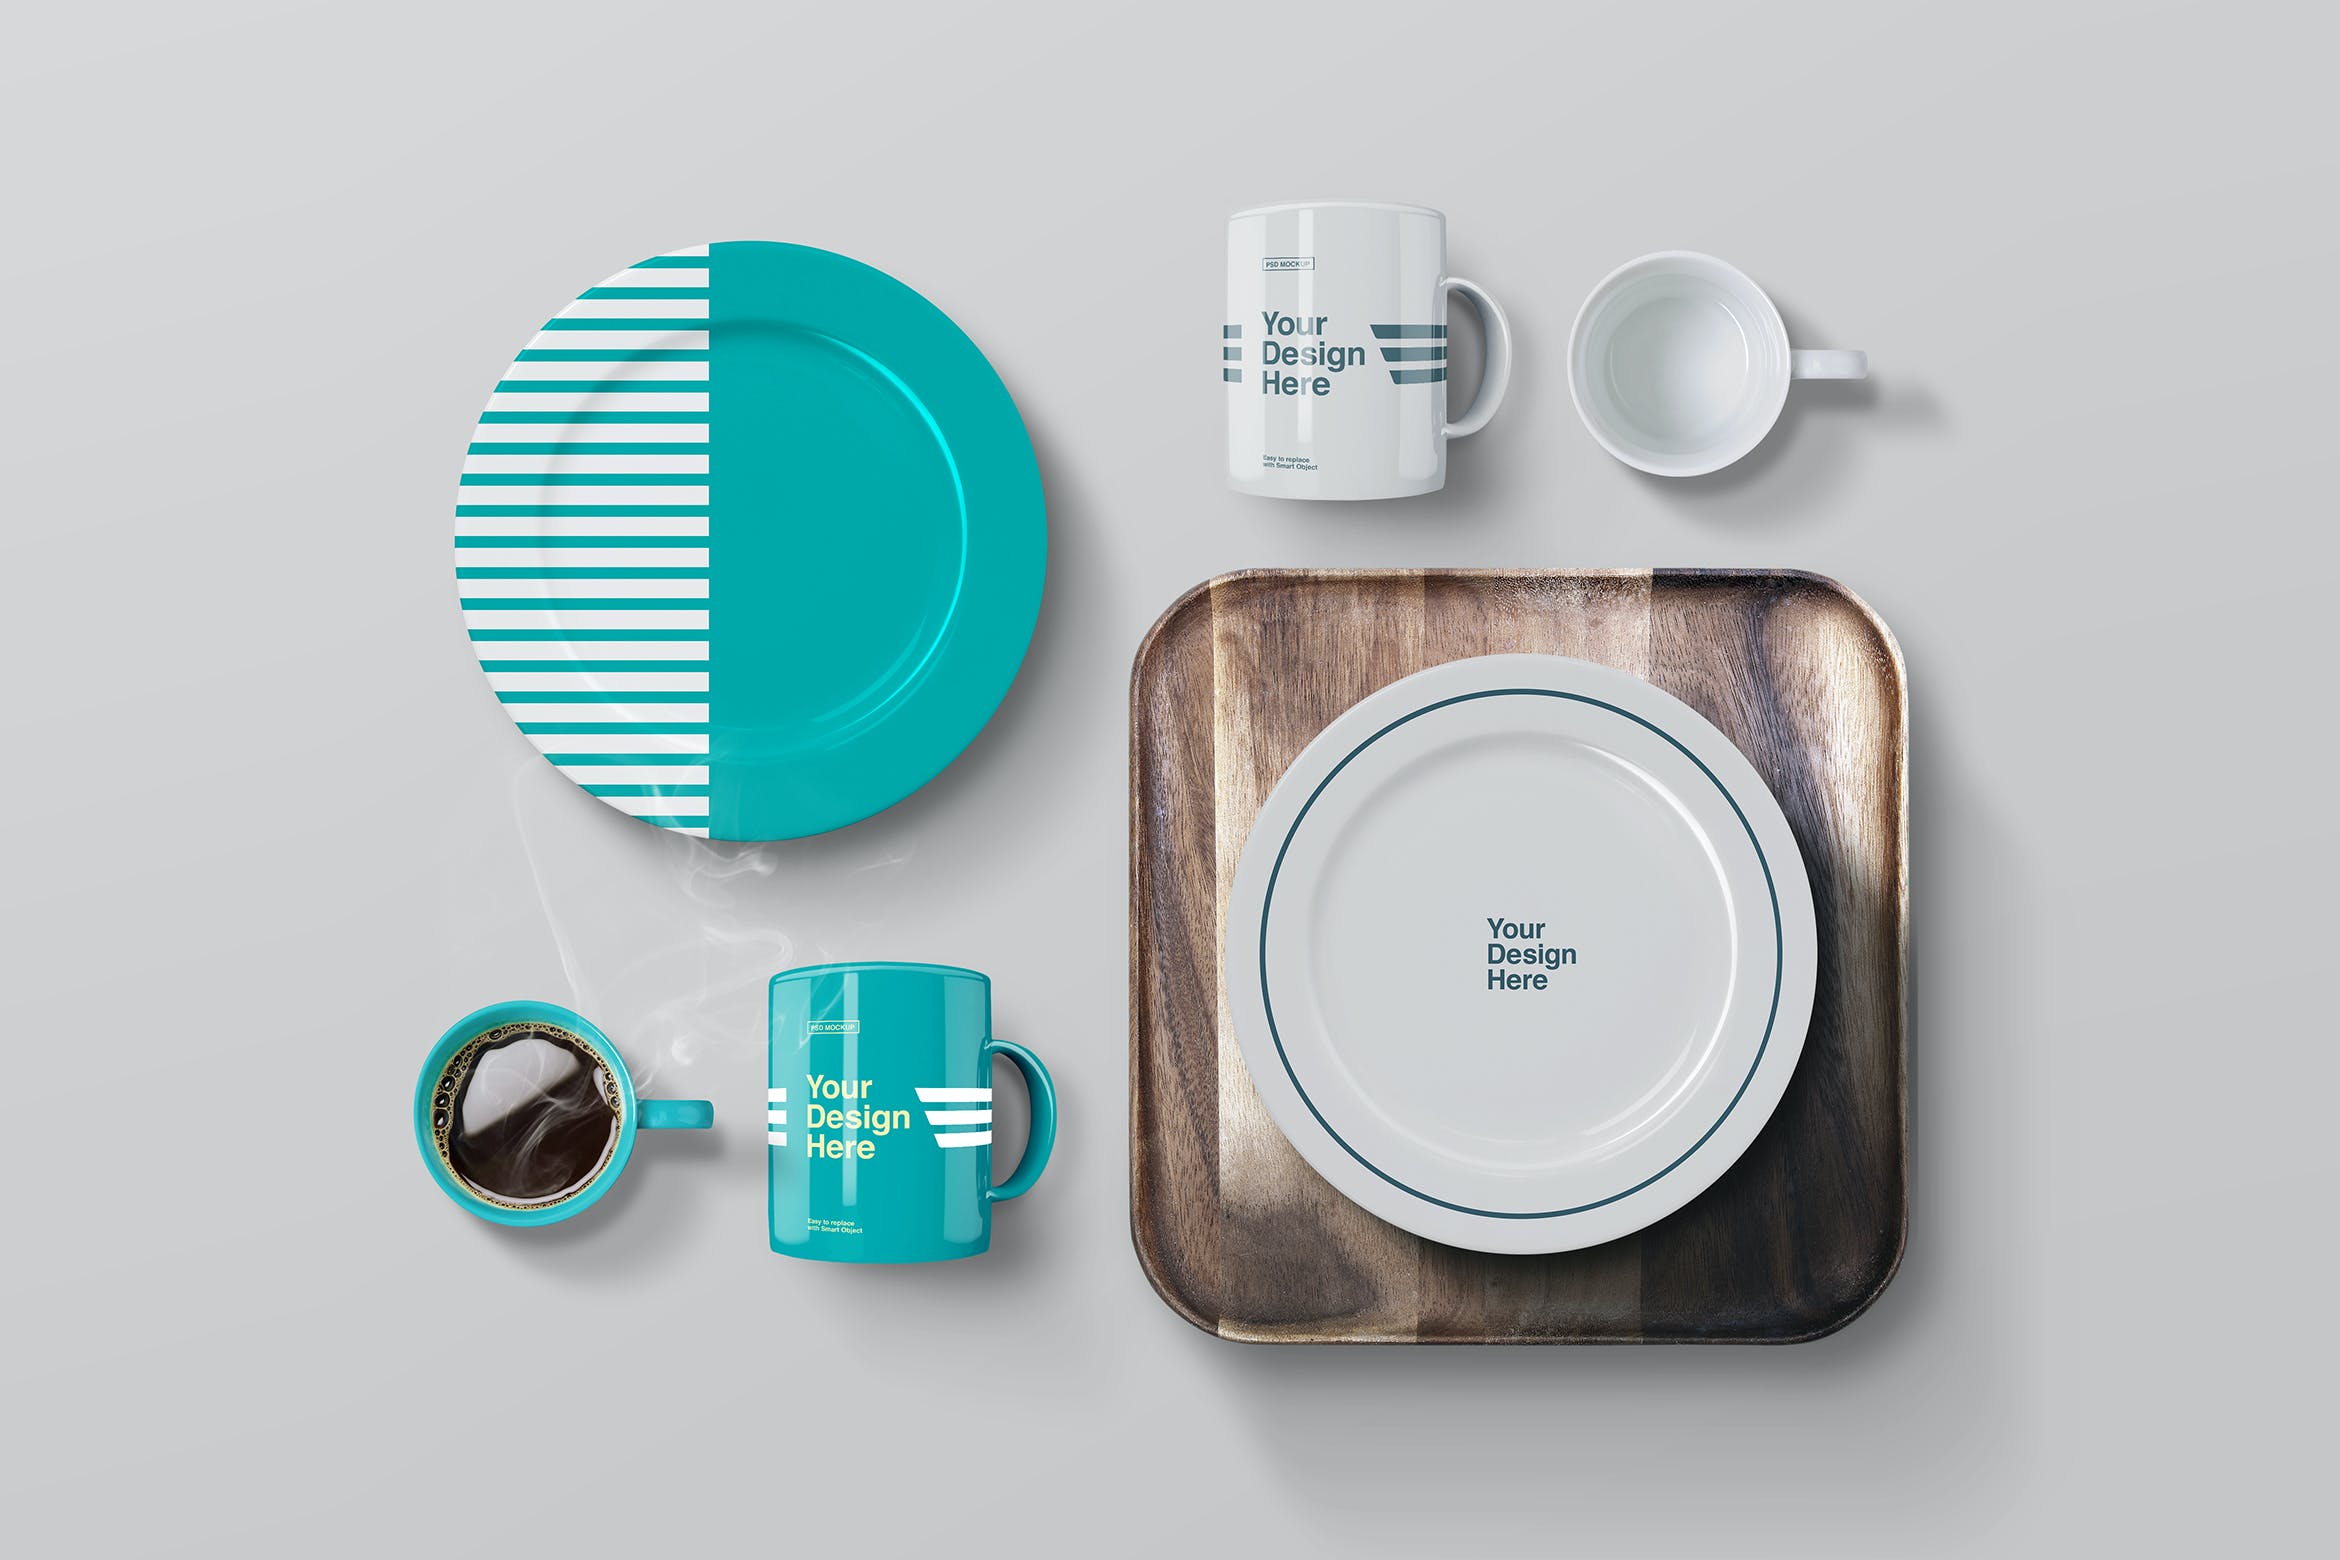 咖啡杯/圆盘/木制托盘展示样机 Plates, Mug Coffee & Wooden Tray Mockup设计素材模板